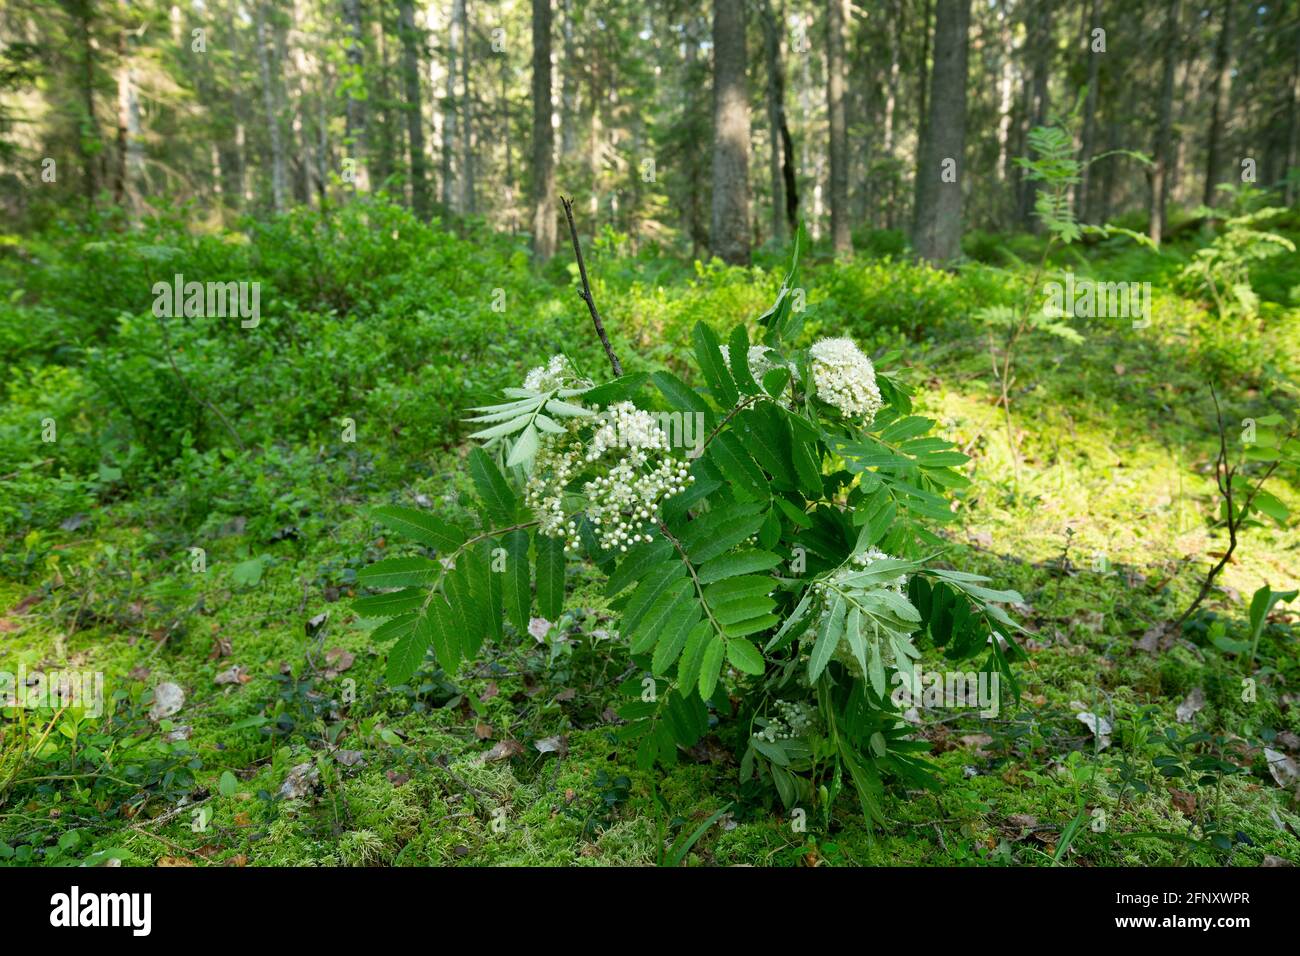 Floreciente rowan, Sorbus aucuparia ramitas utilizadas para atraer insectos en la investigación entomológica en bosques de coníferas iluminados por el sol Foto de stock